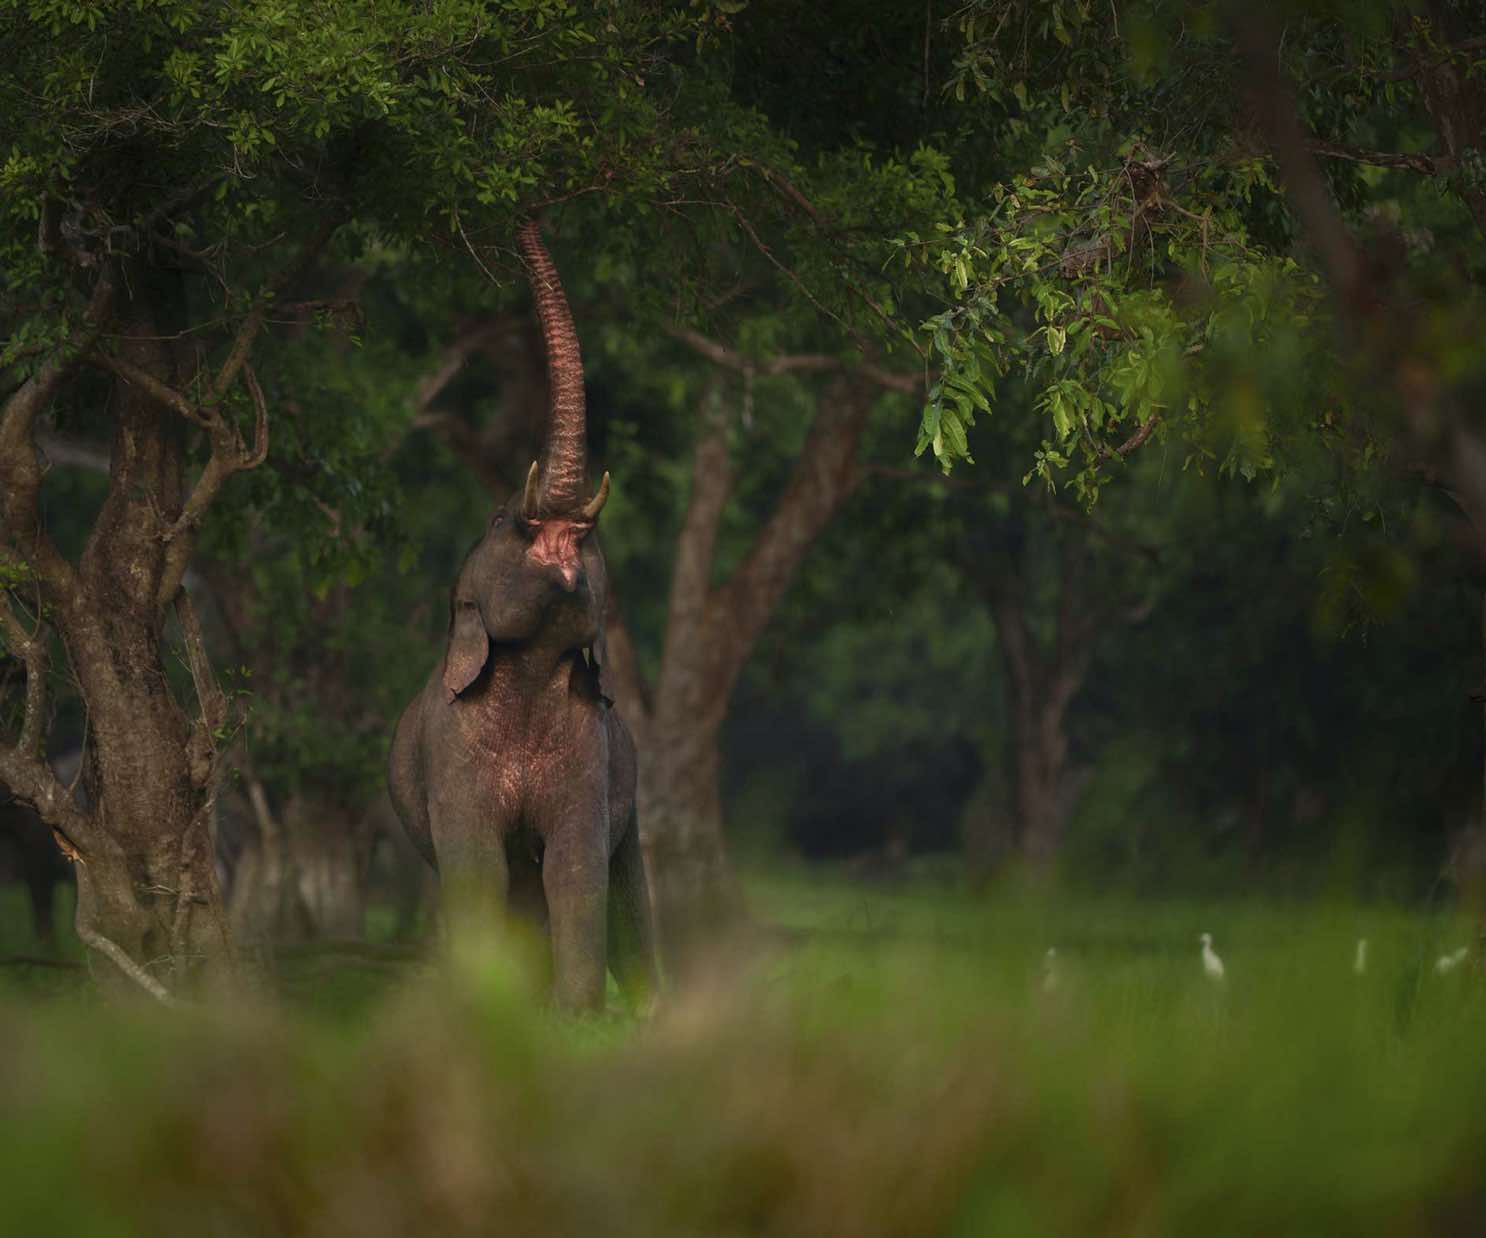 Foto de elefante com tromba levantada buscando alimento em árvore é uma das premiadas no concurso Nature inFocus